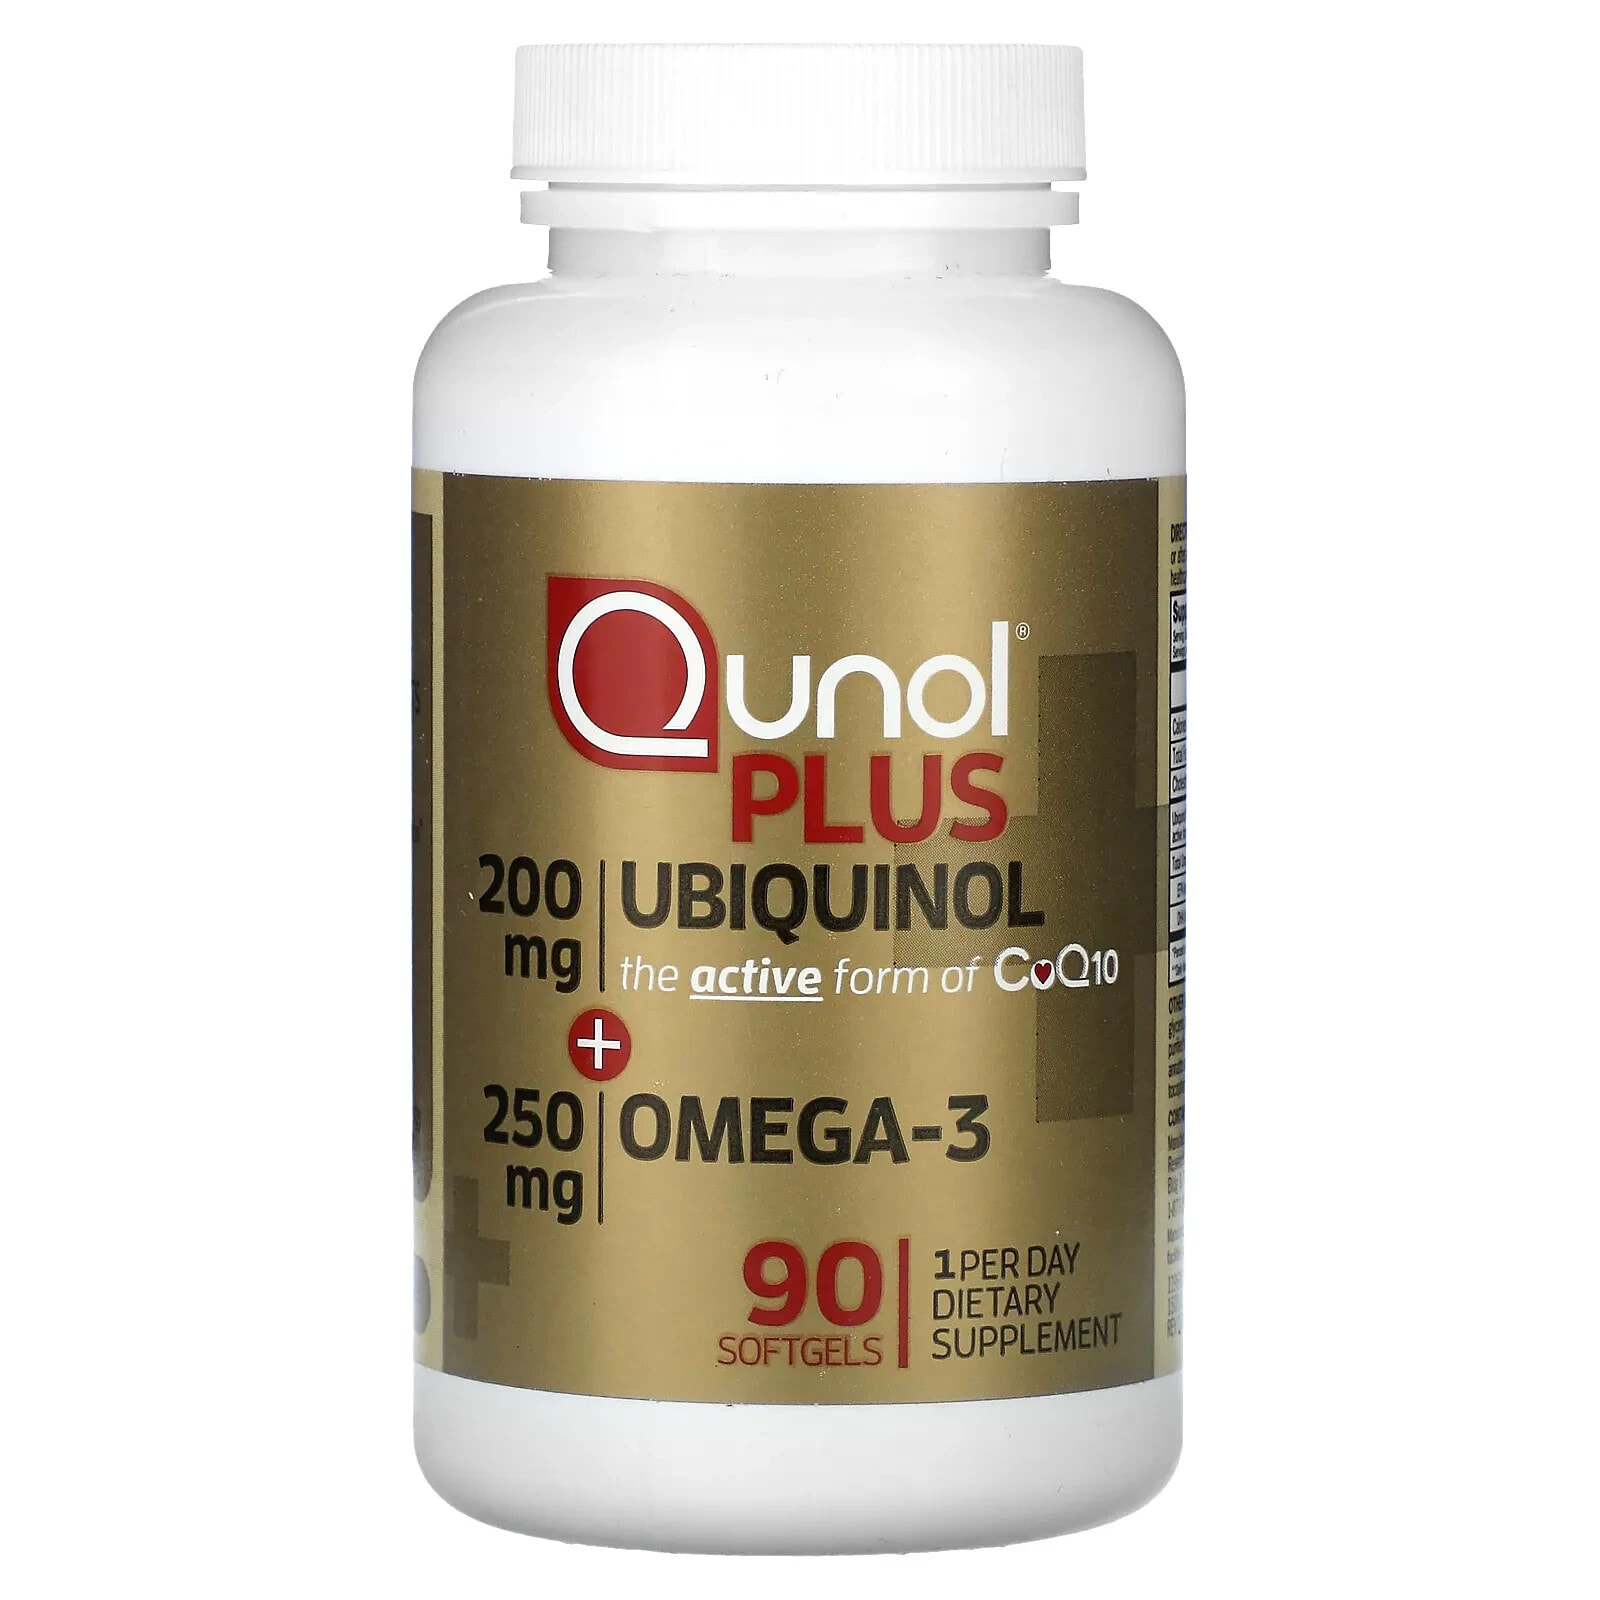 Qunol, Plus Ubiquinol + Omega-3, 200 mg + 250 mg, 90 Softgels